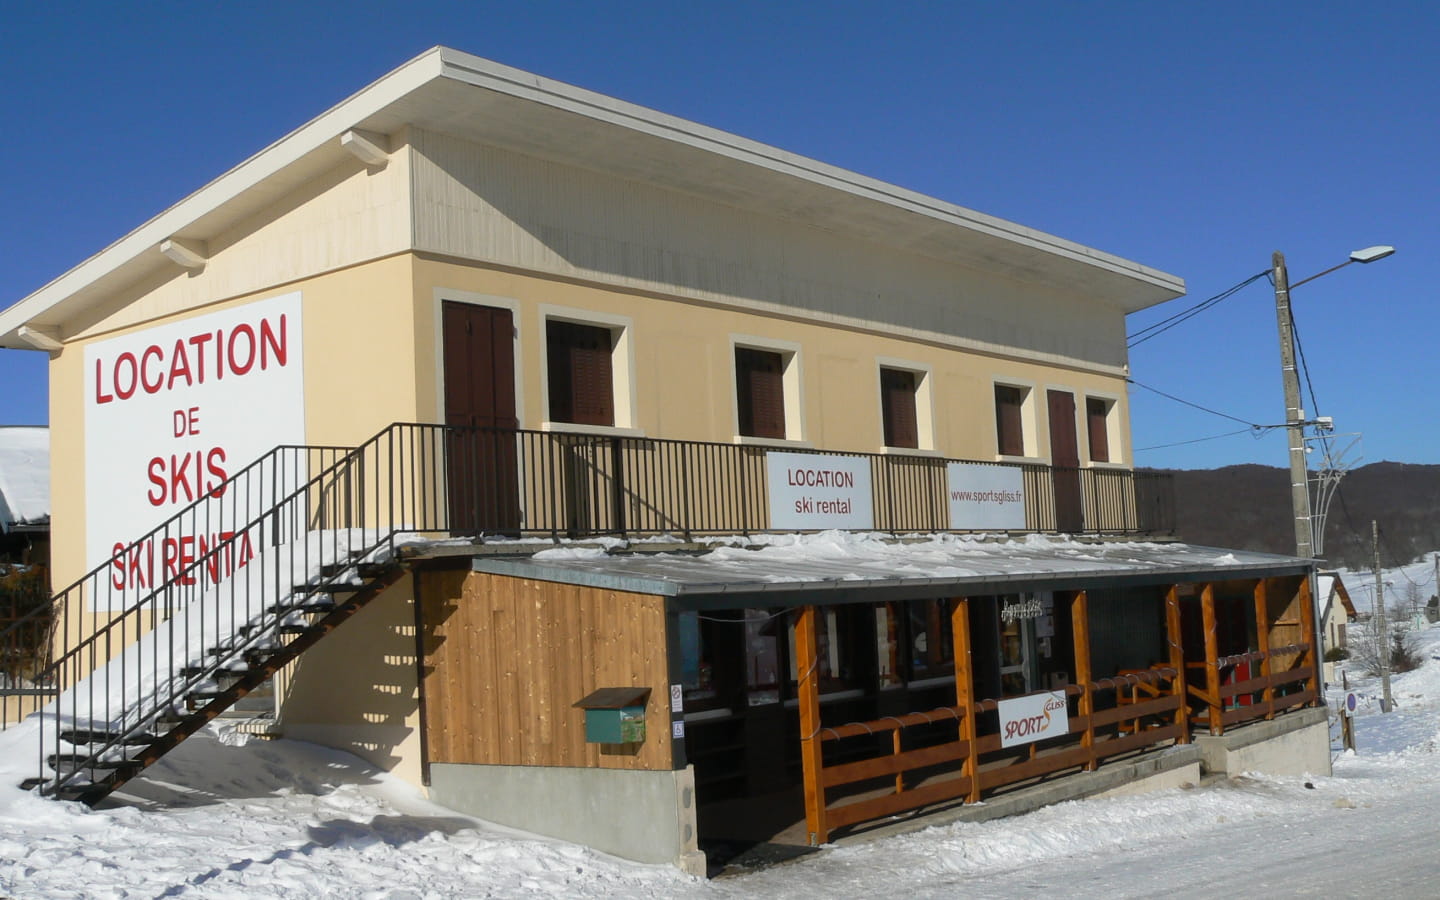 Location de matériel ski et magasin de sports SportsGliss